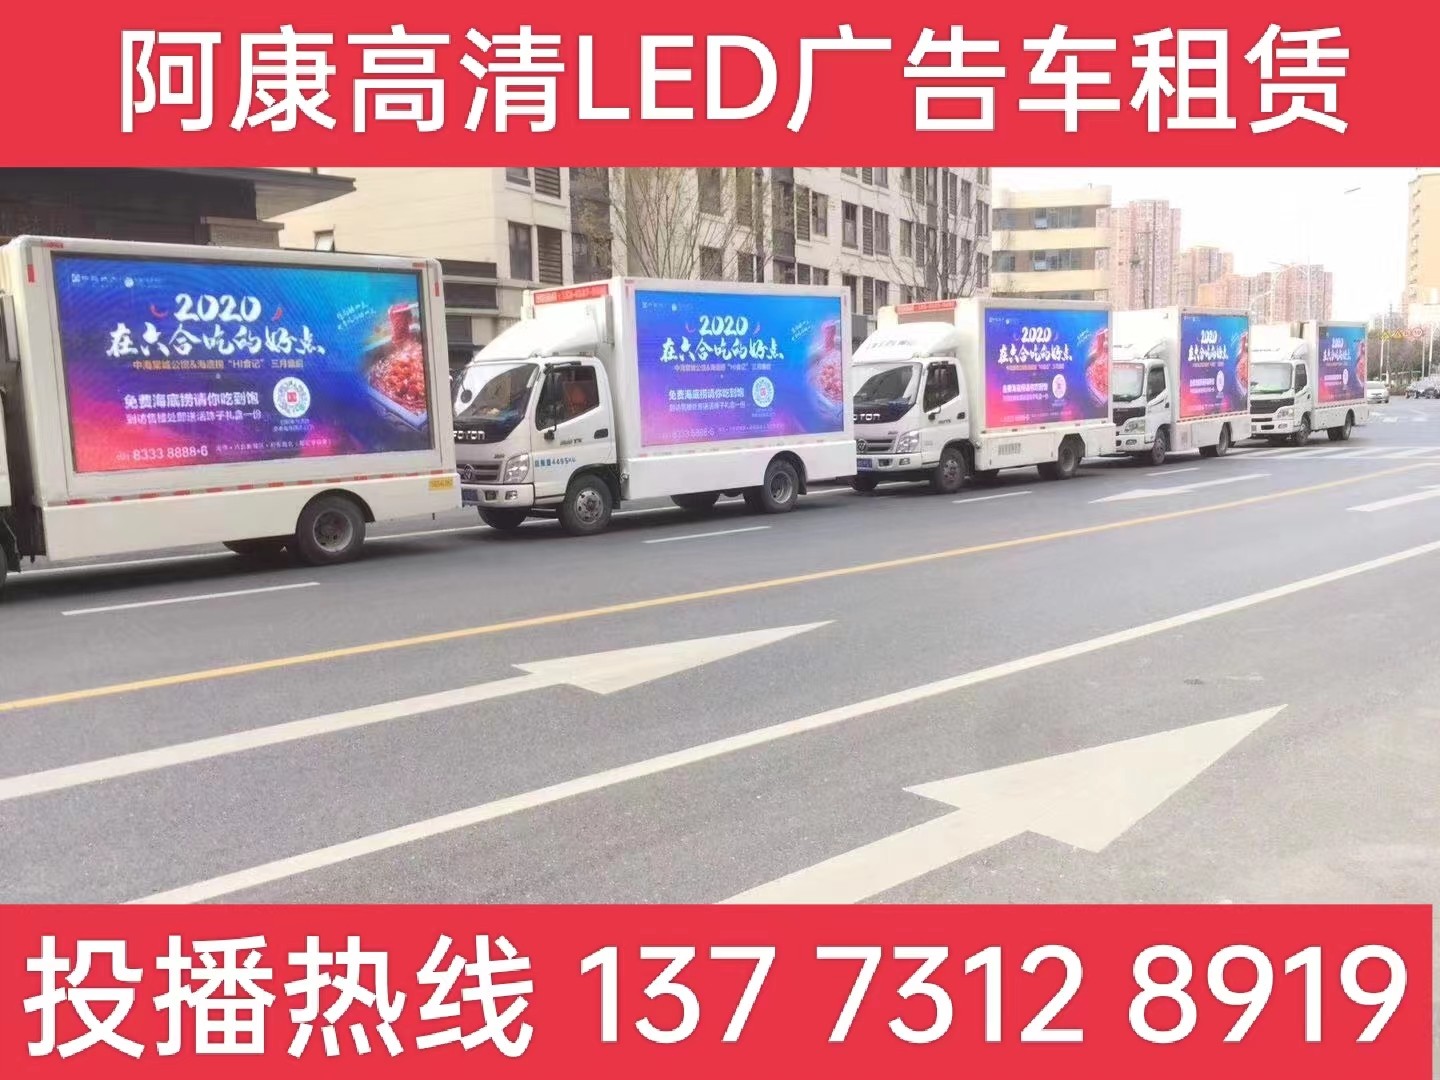 宜兴宣传车出租-海底捞LED广告